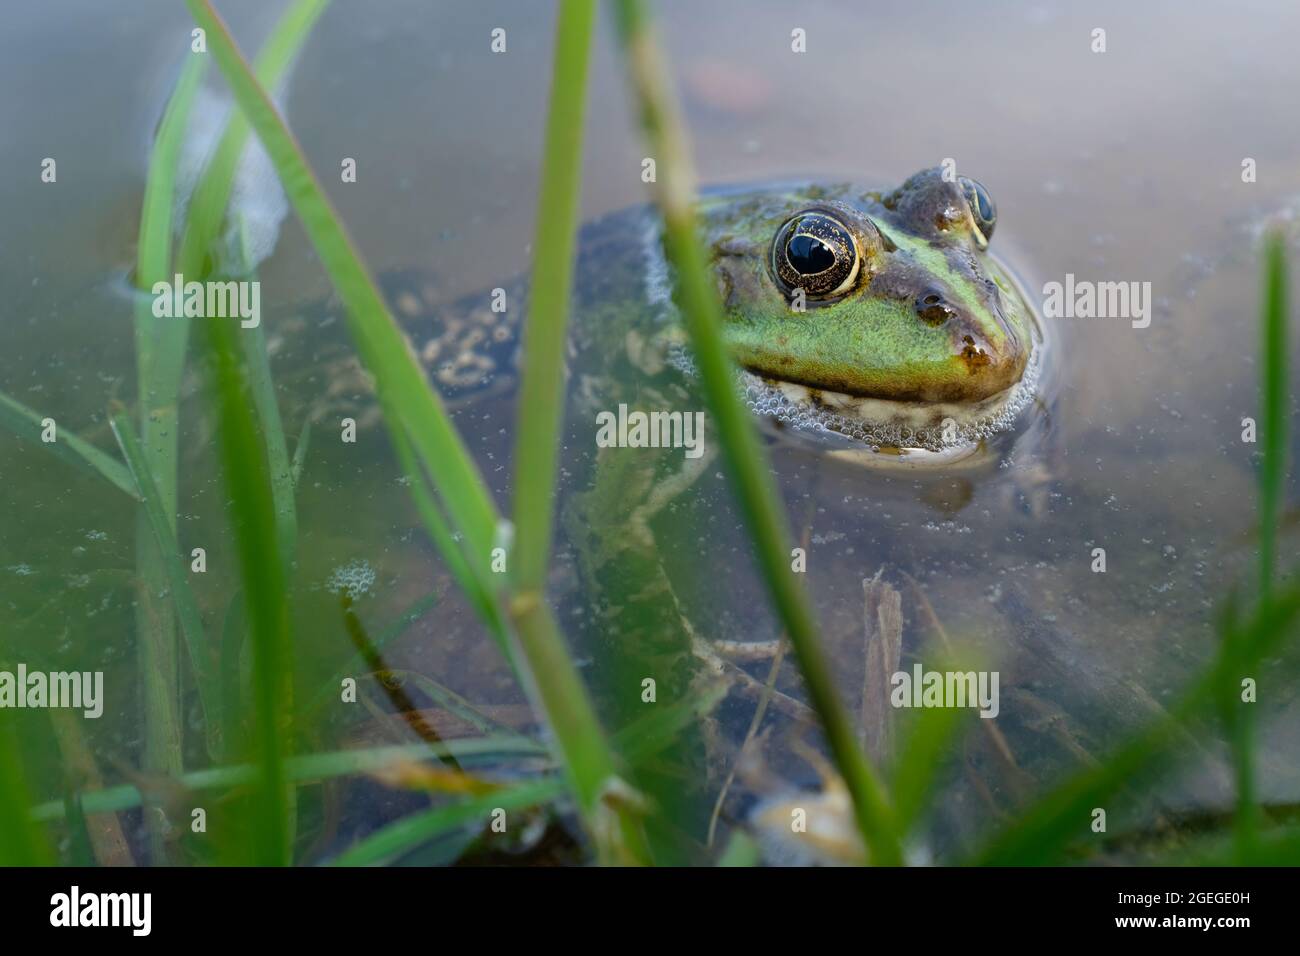 Rana di lago, rana di palude, rana commestibile nel laghetto. La rana verde nell'acqua. Foto Stock